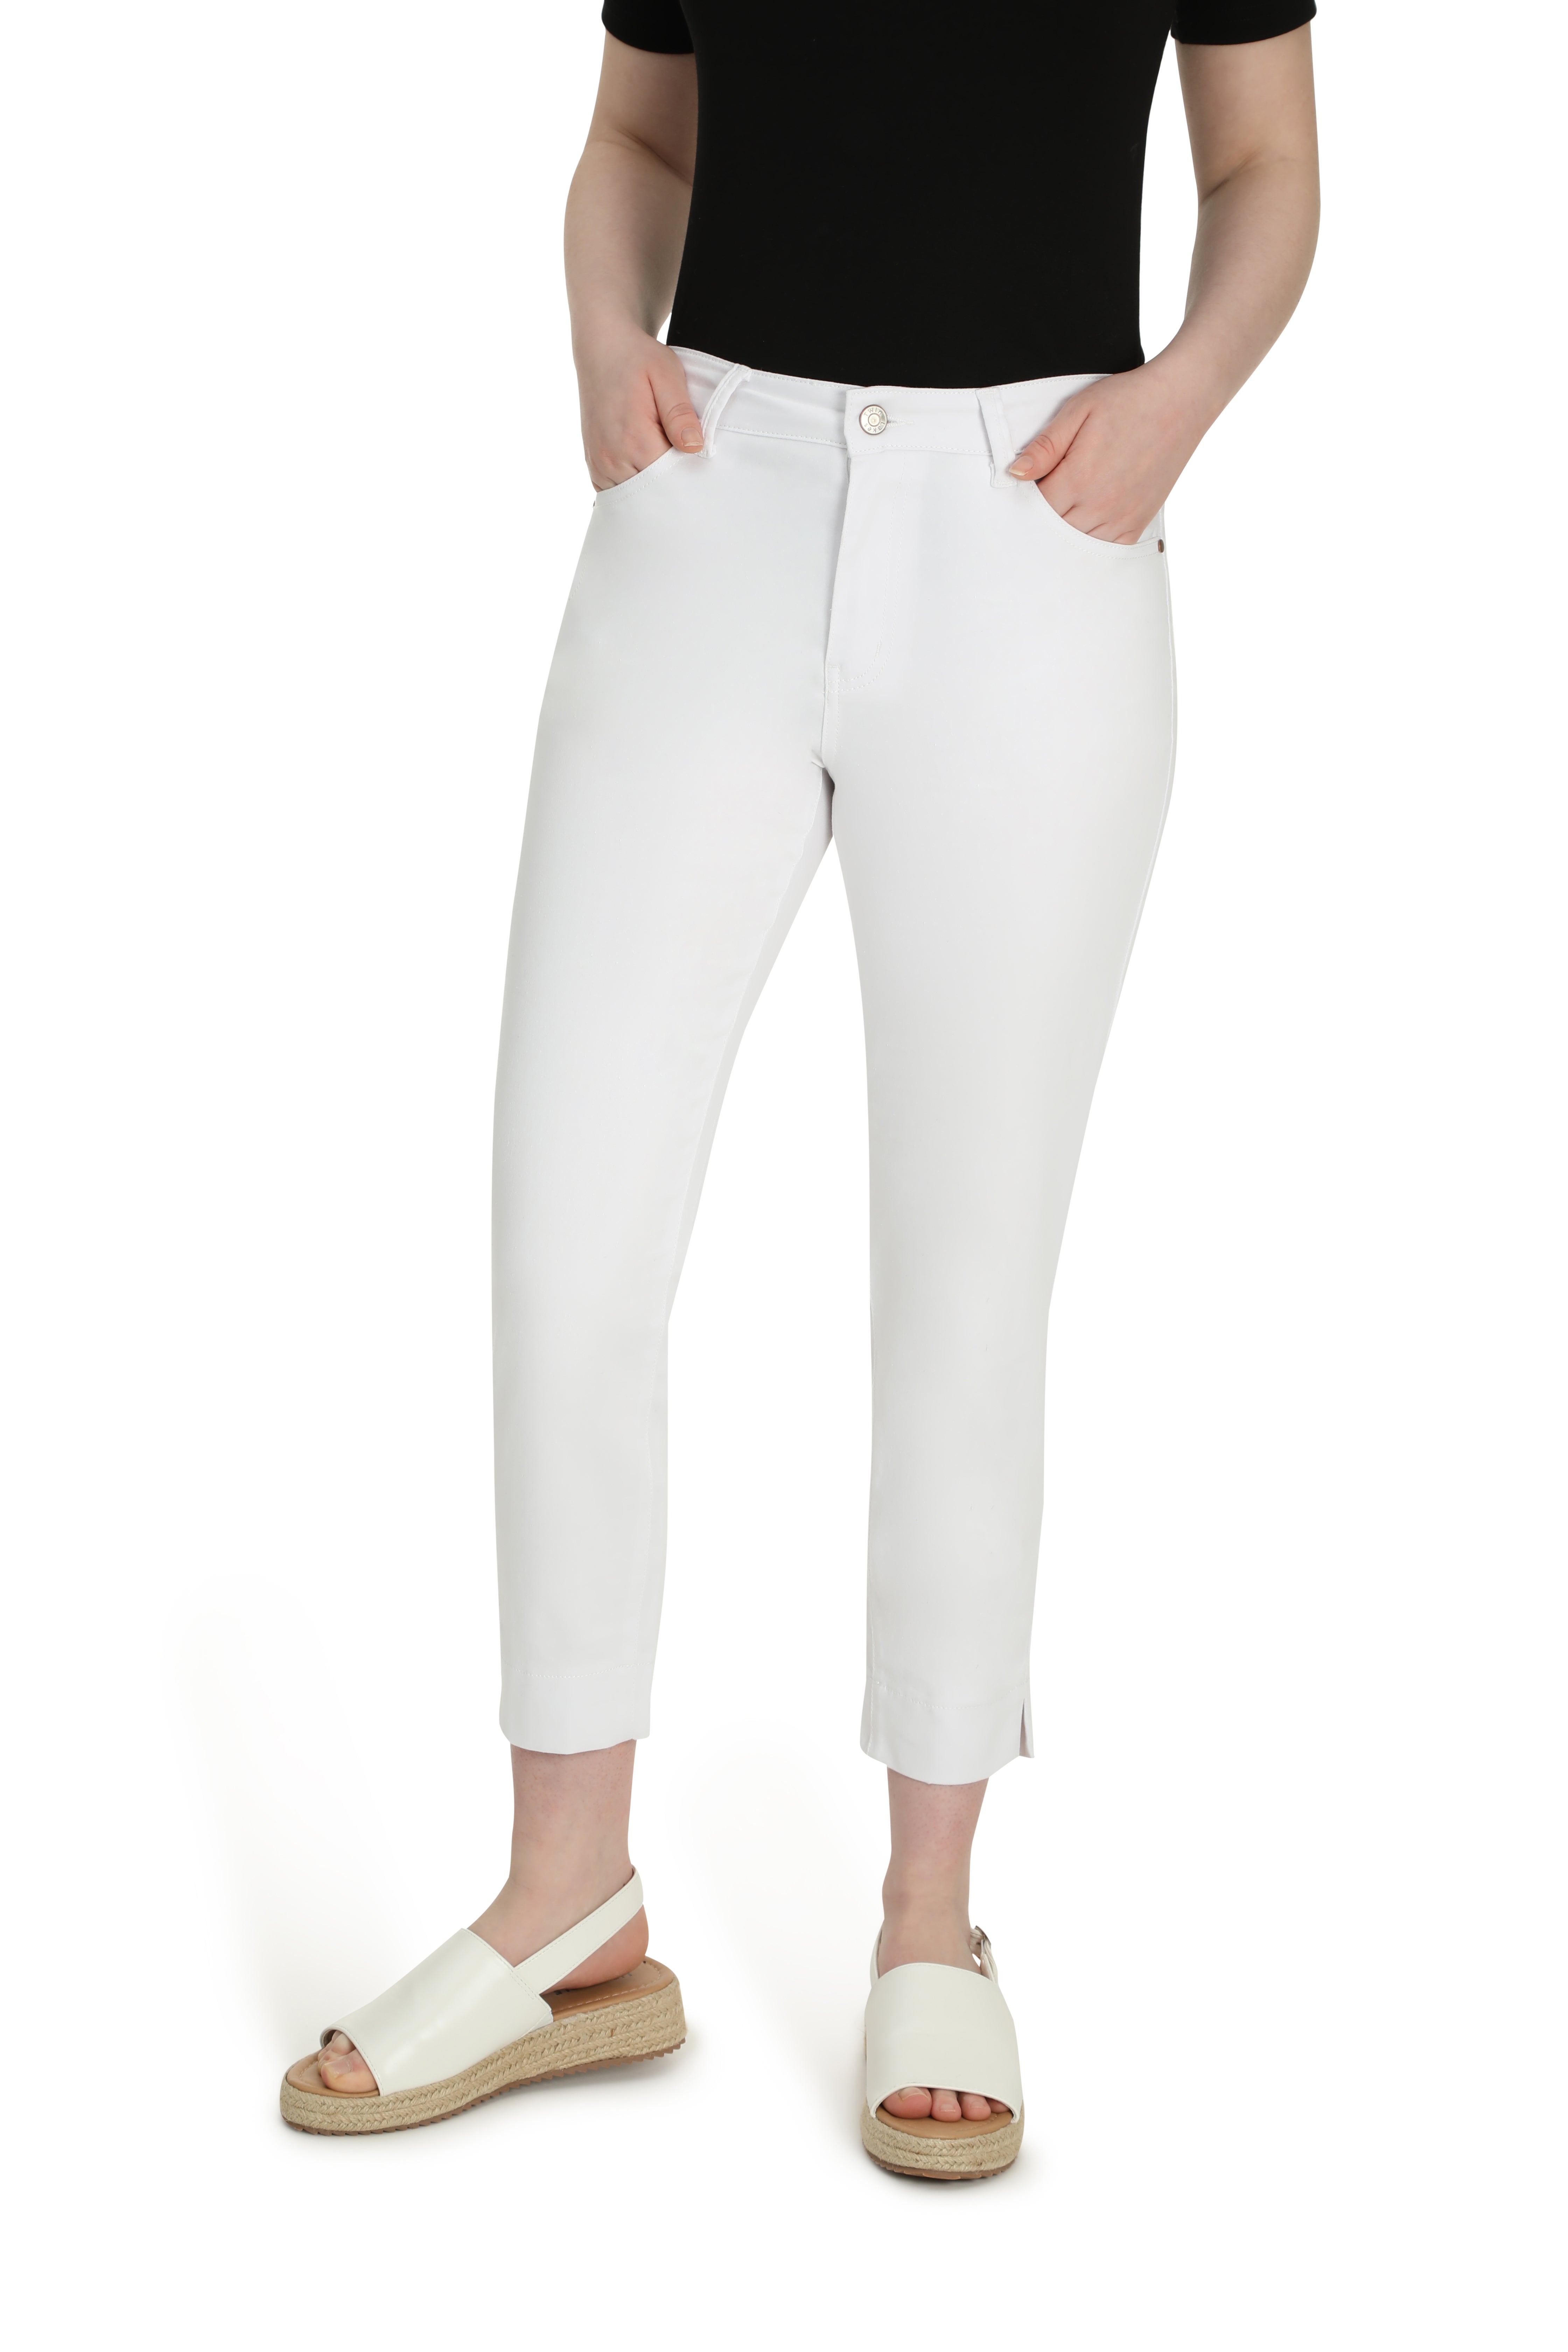 Luxe Denim Capri Jean in White